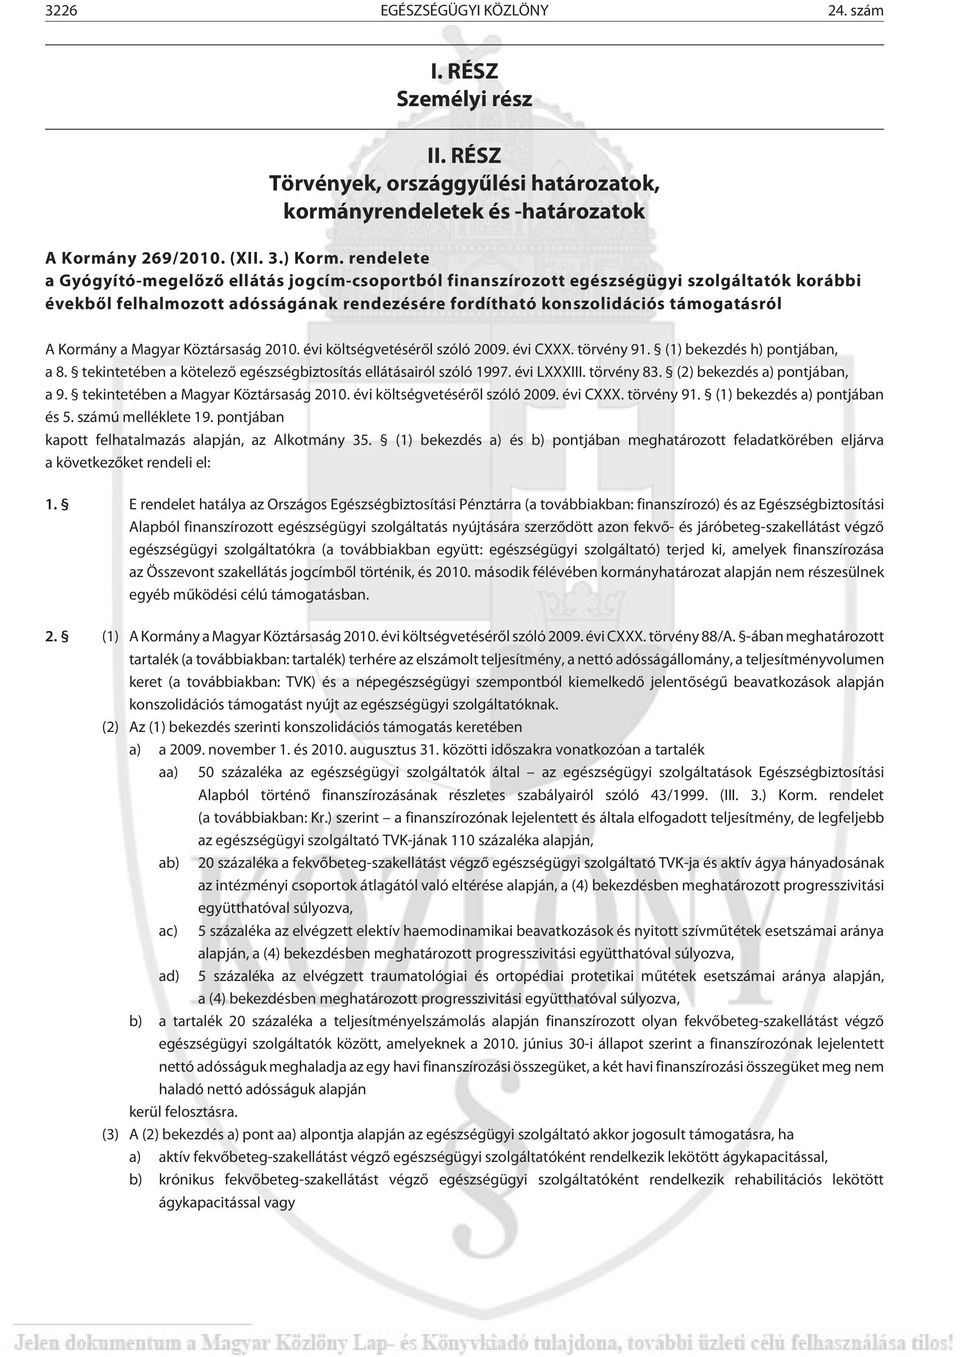 a Magyar Köztársaság 2010. évi költségvetésérõl szóló 2009. évi CXXX. törvény 91. (1) bekezdés h) pontjában, a 8. tekintetében a kötelezõ egészségbiztosítás ellátásairól szóló 1997. évi LXXXIII.